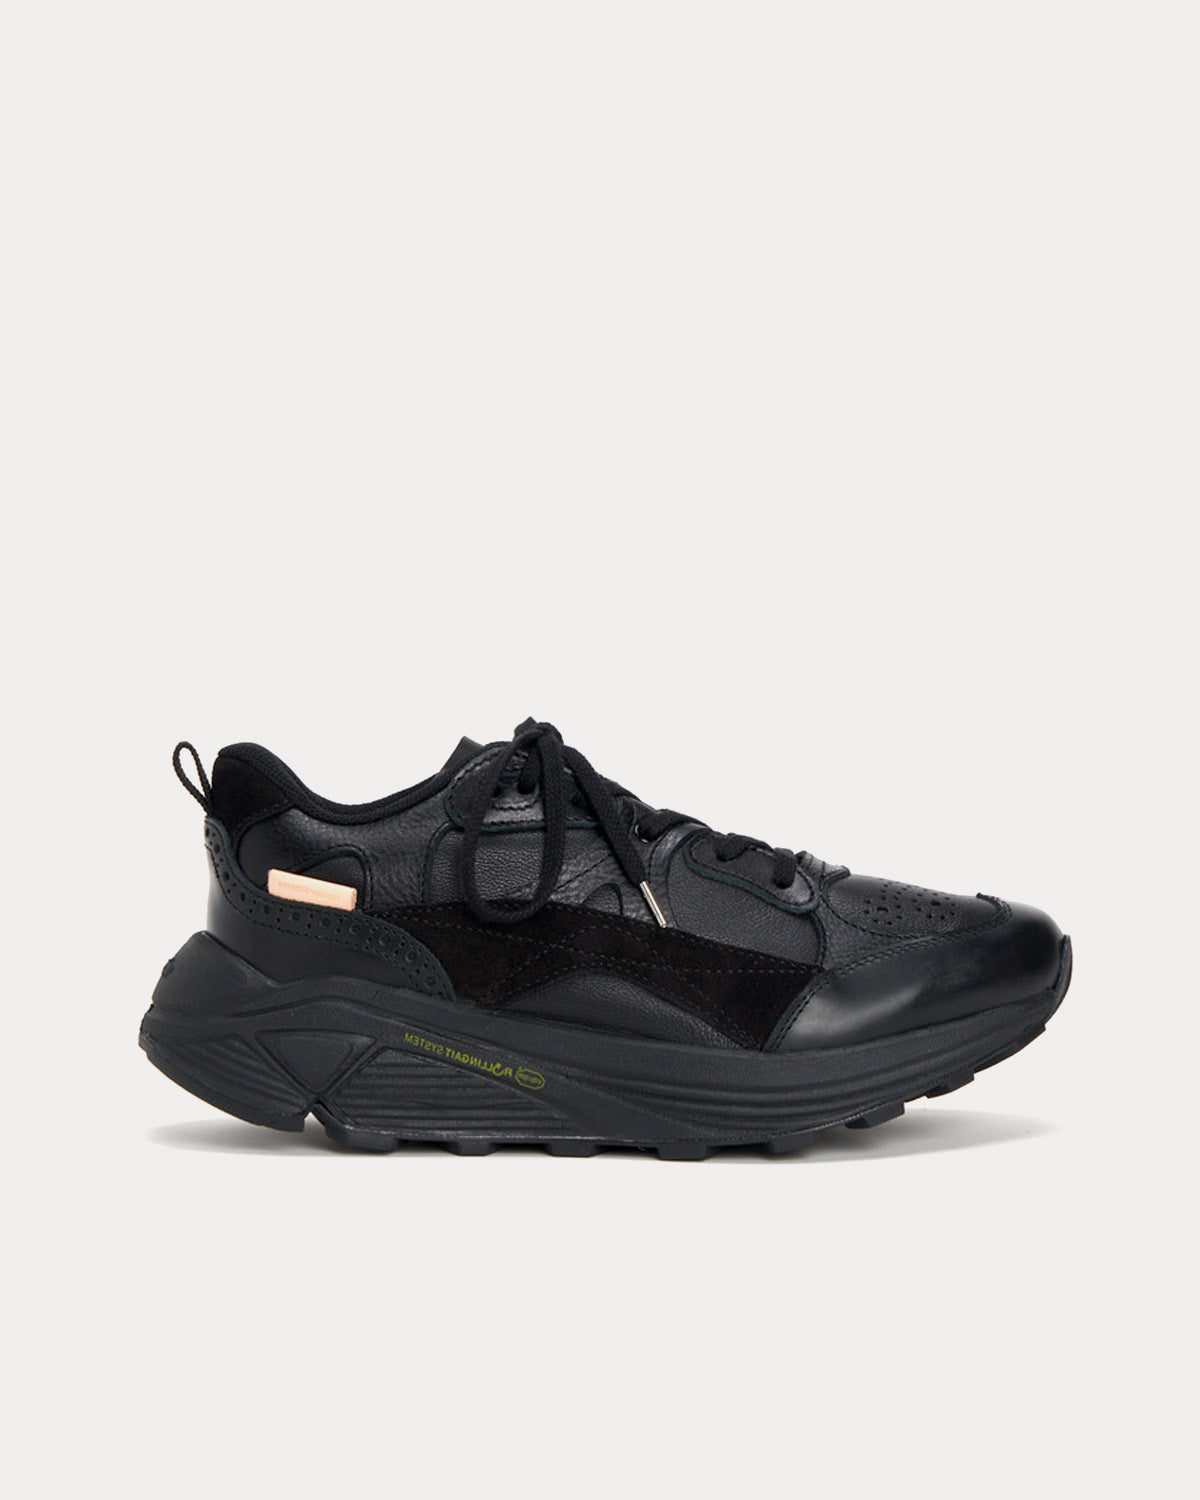 OAO Fountain Black Low Top Sneakers - Sneak in Peace